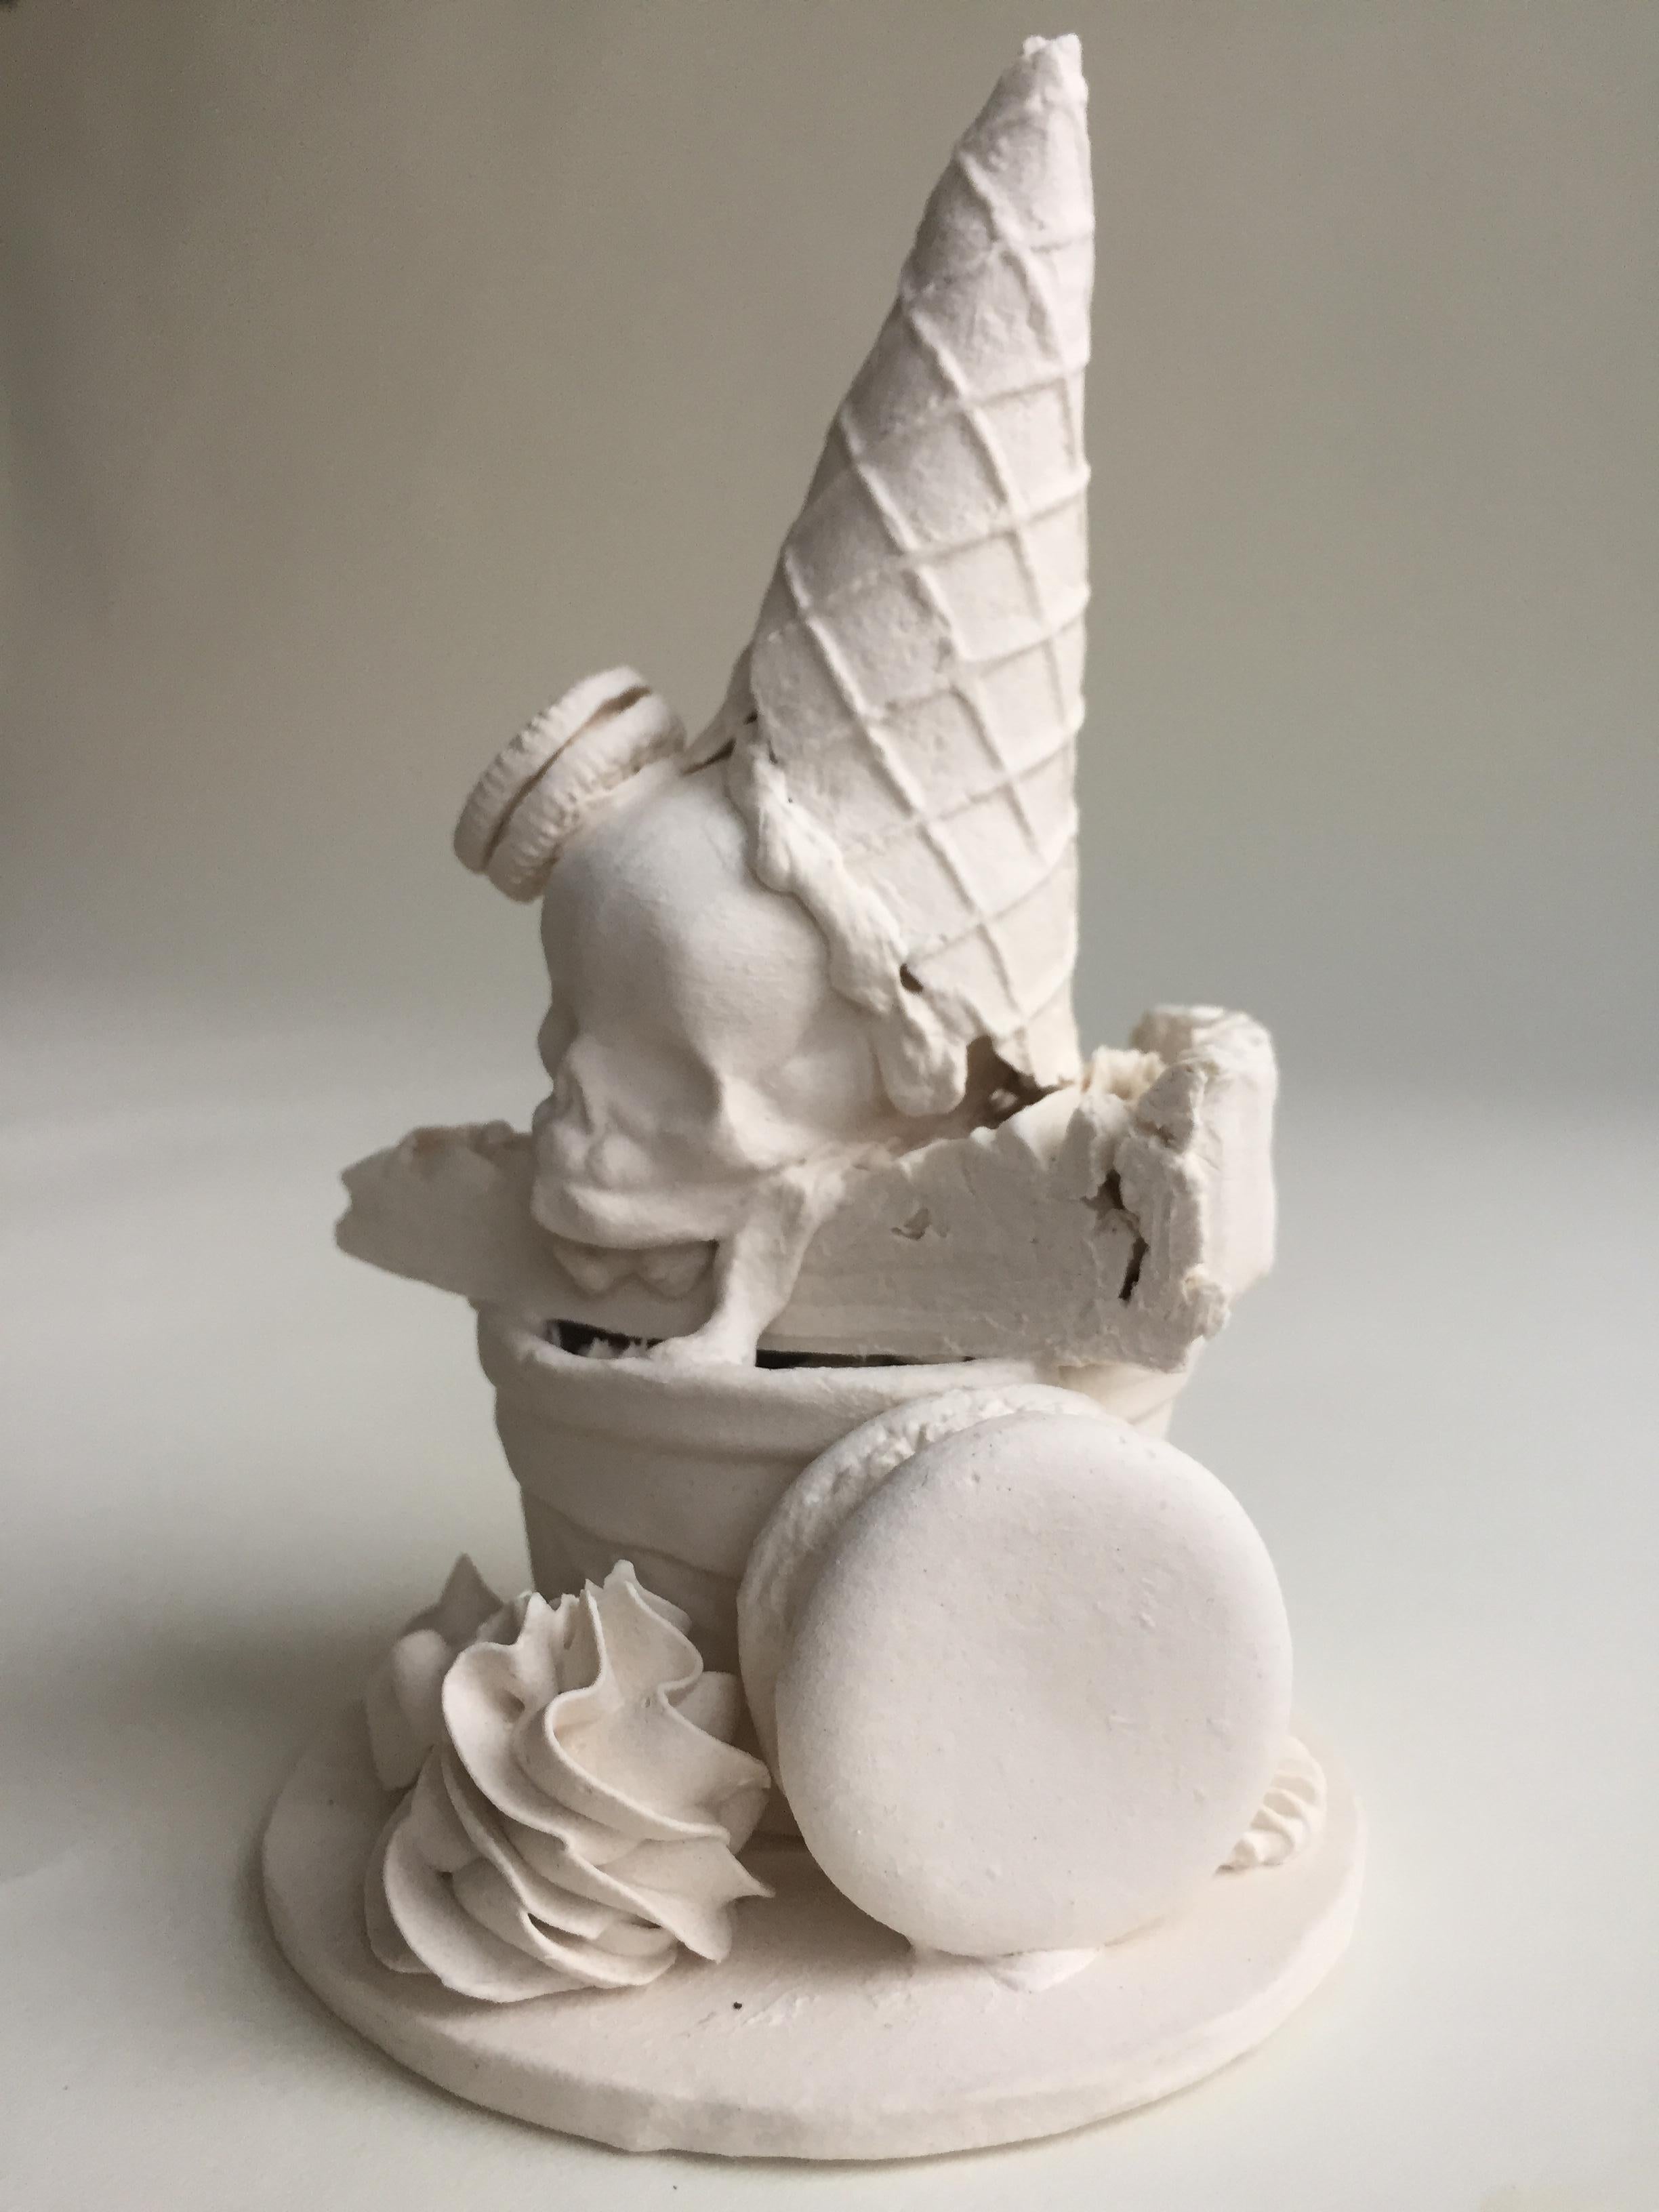 Dessert Sampler - Sculpture by Jacqueline Tse